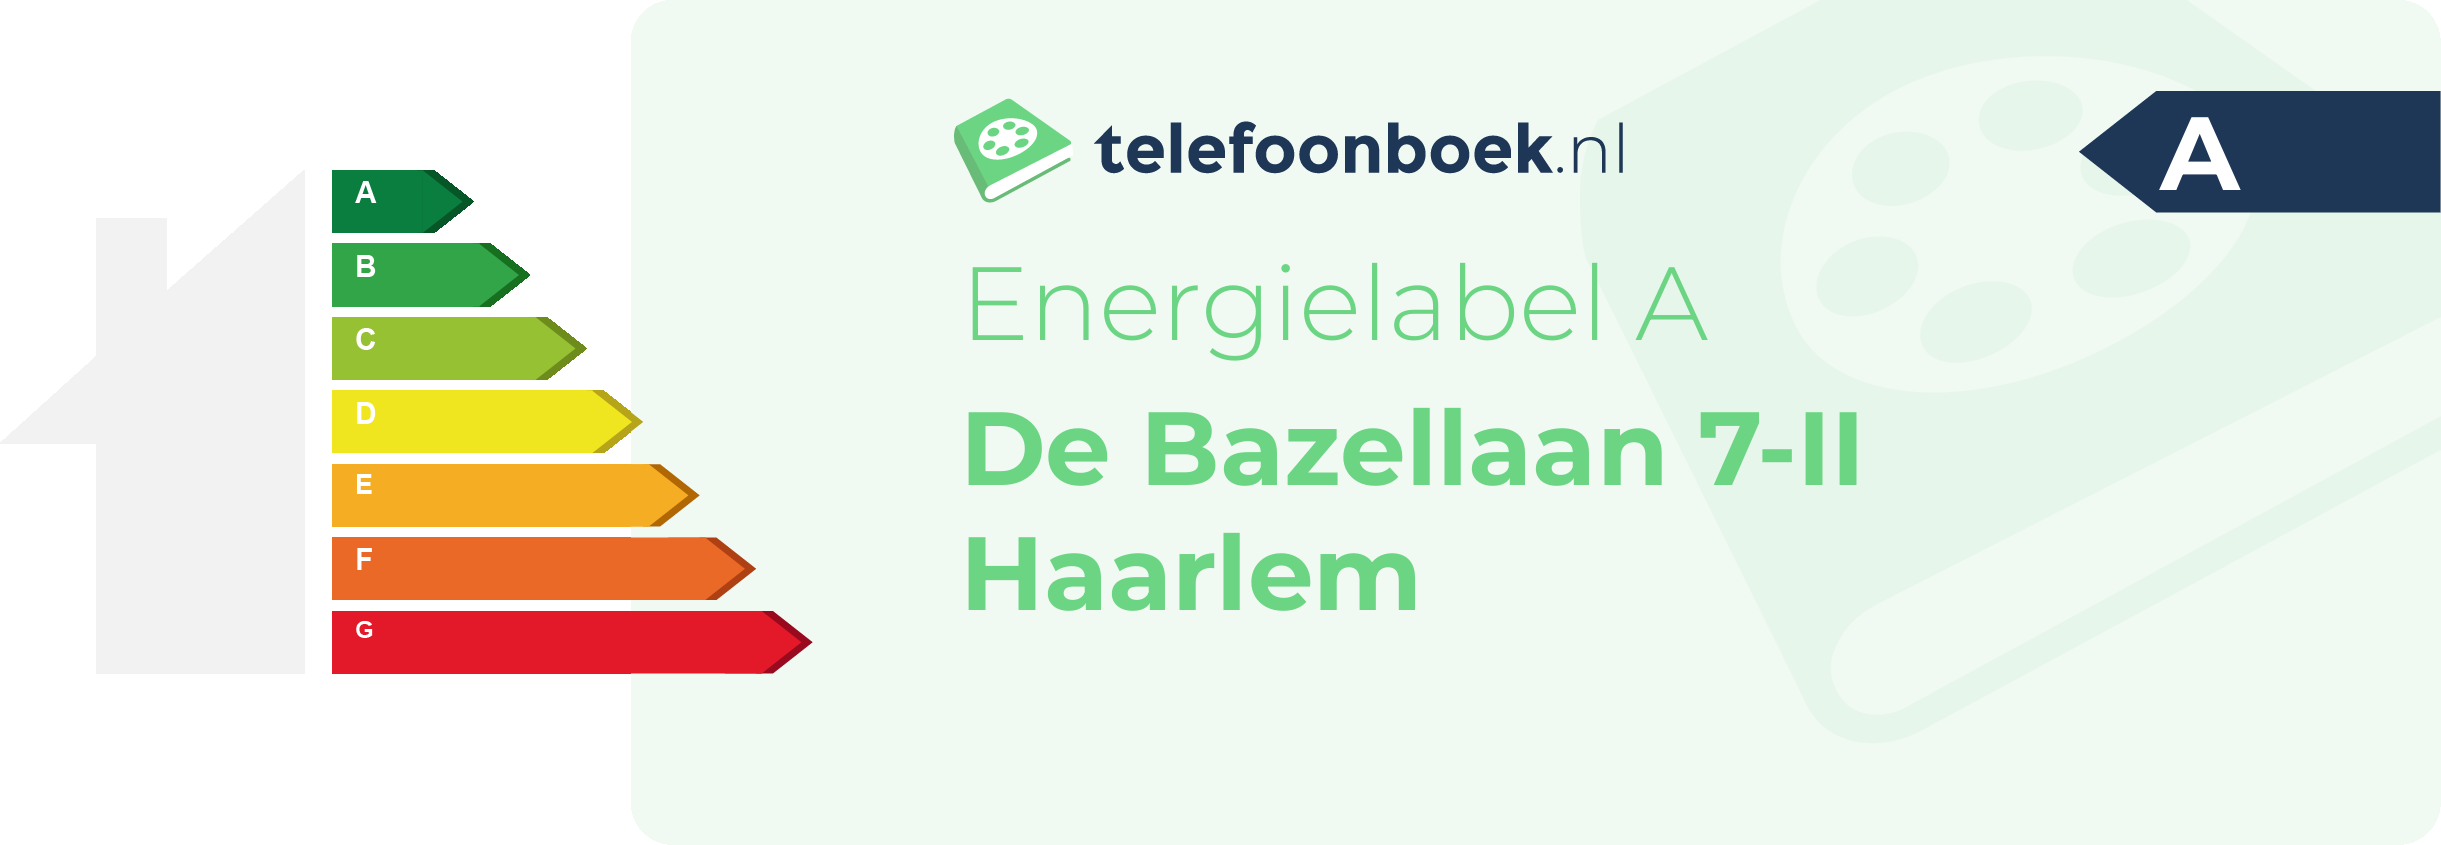 Energielabel De Bazellaan 7-II Haarlem